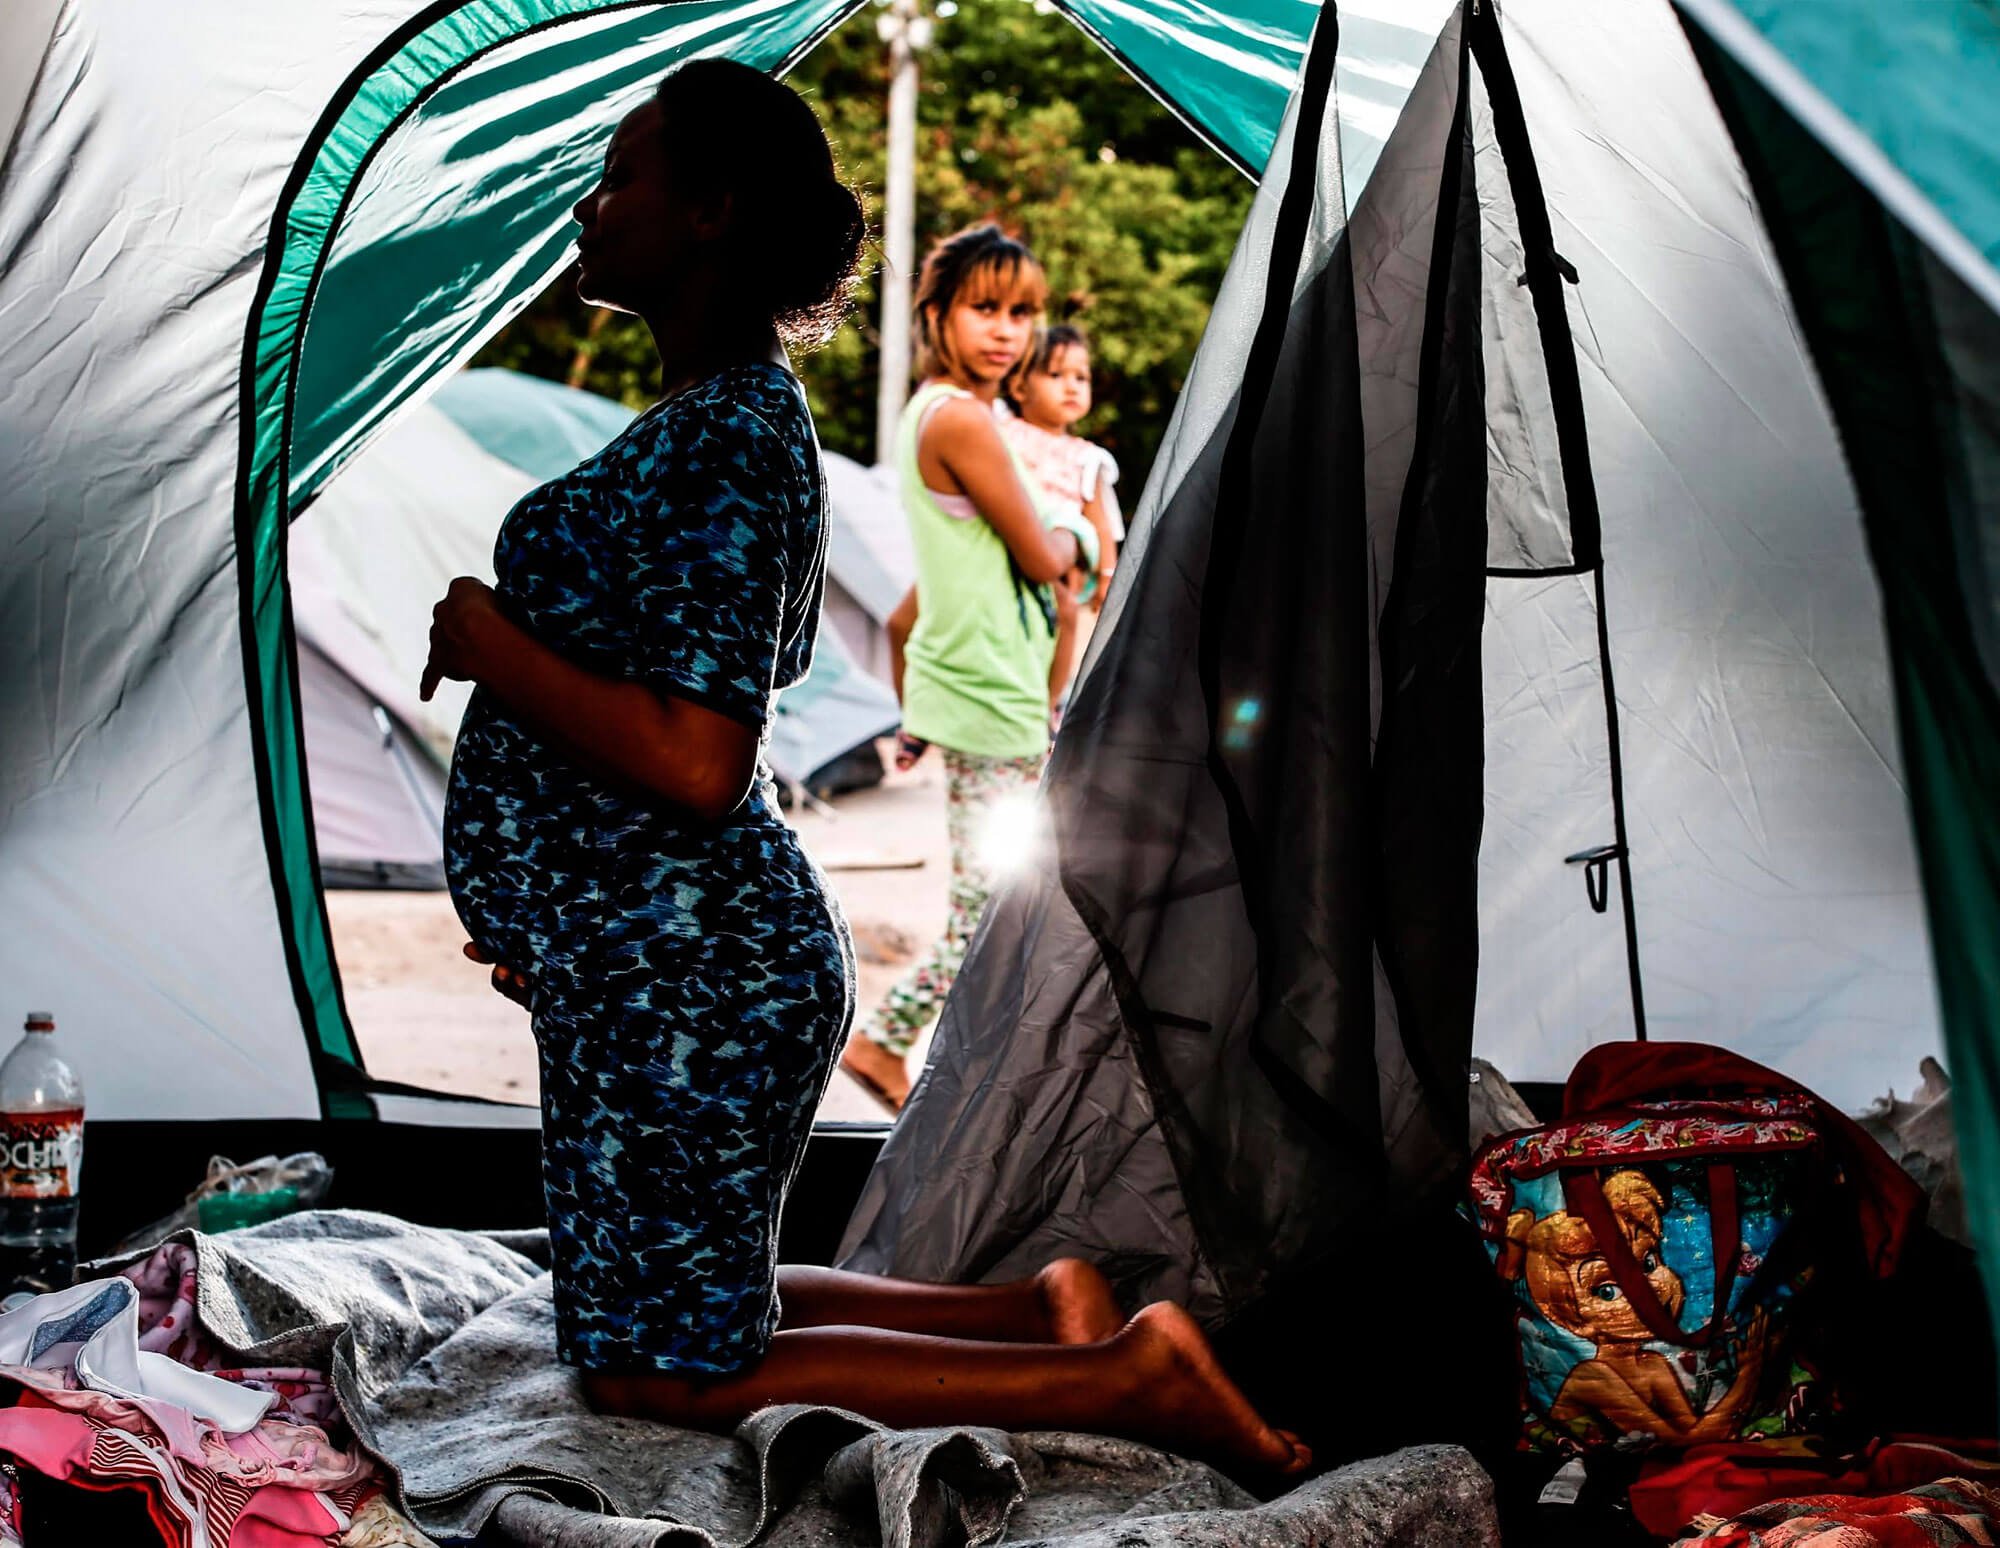 Órfãs de terra Mãe - A saga das mulheres venezuelanas refugiadas no brasil